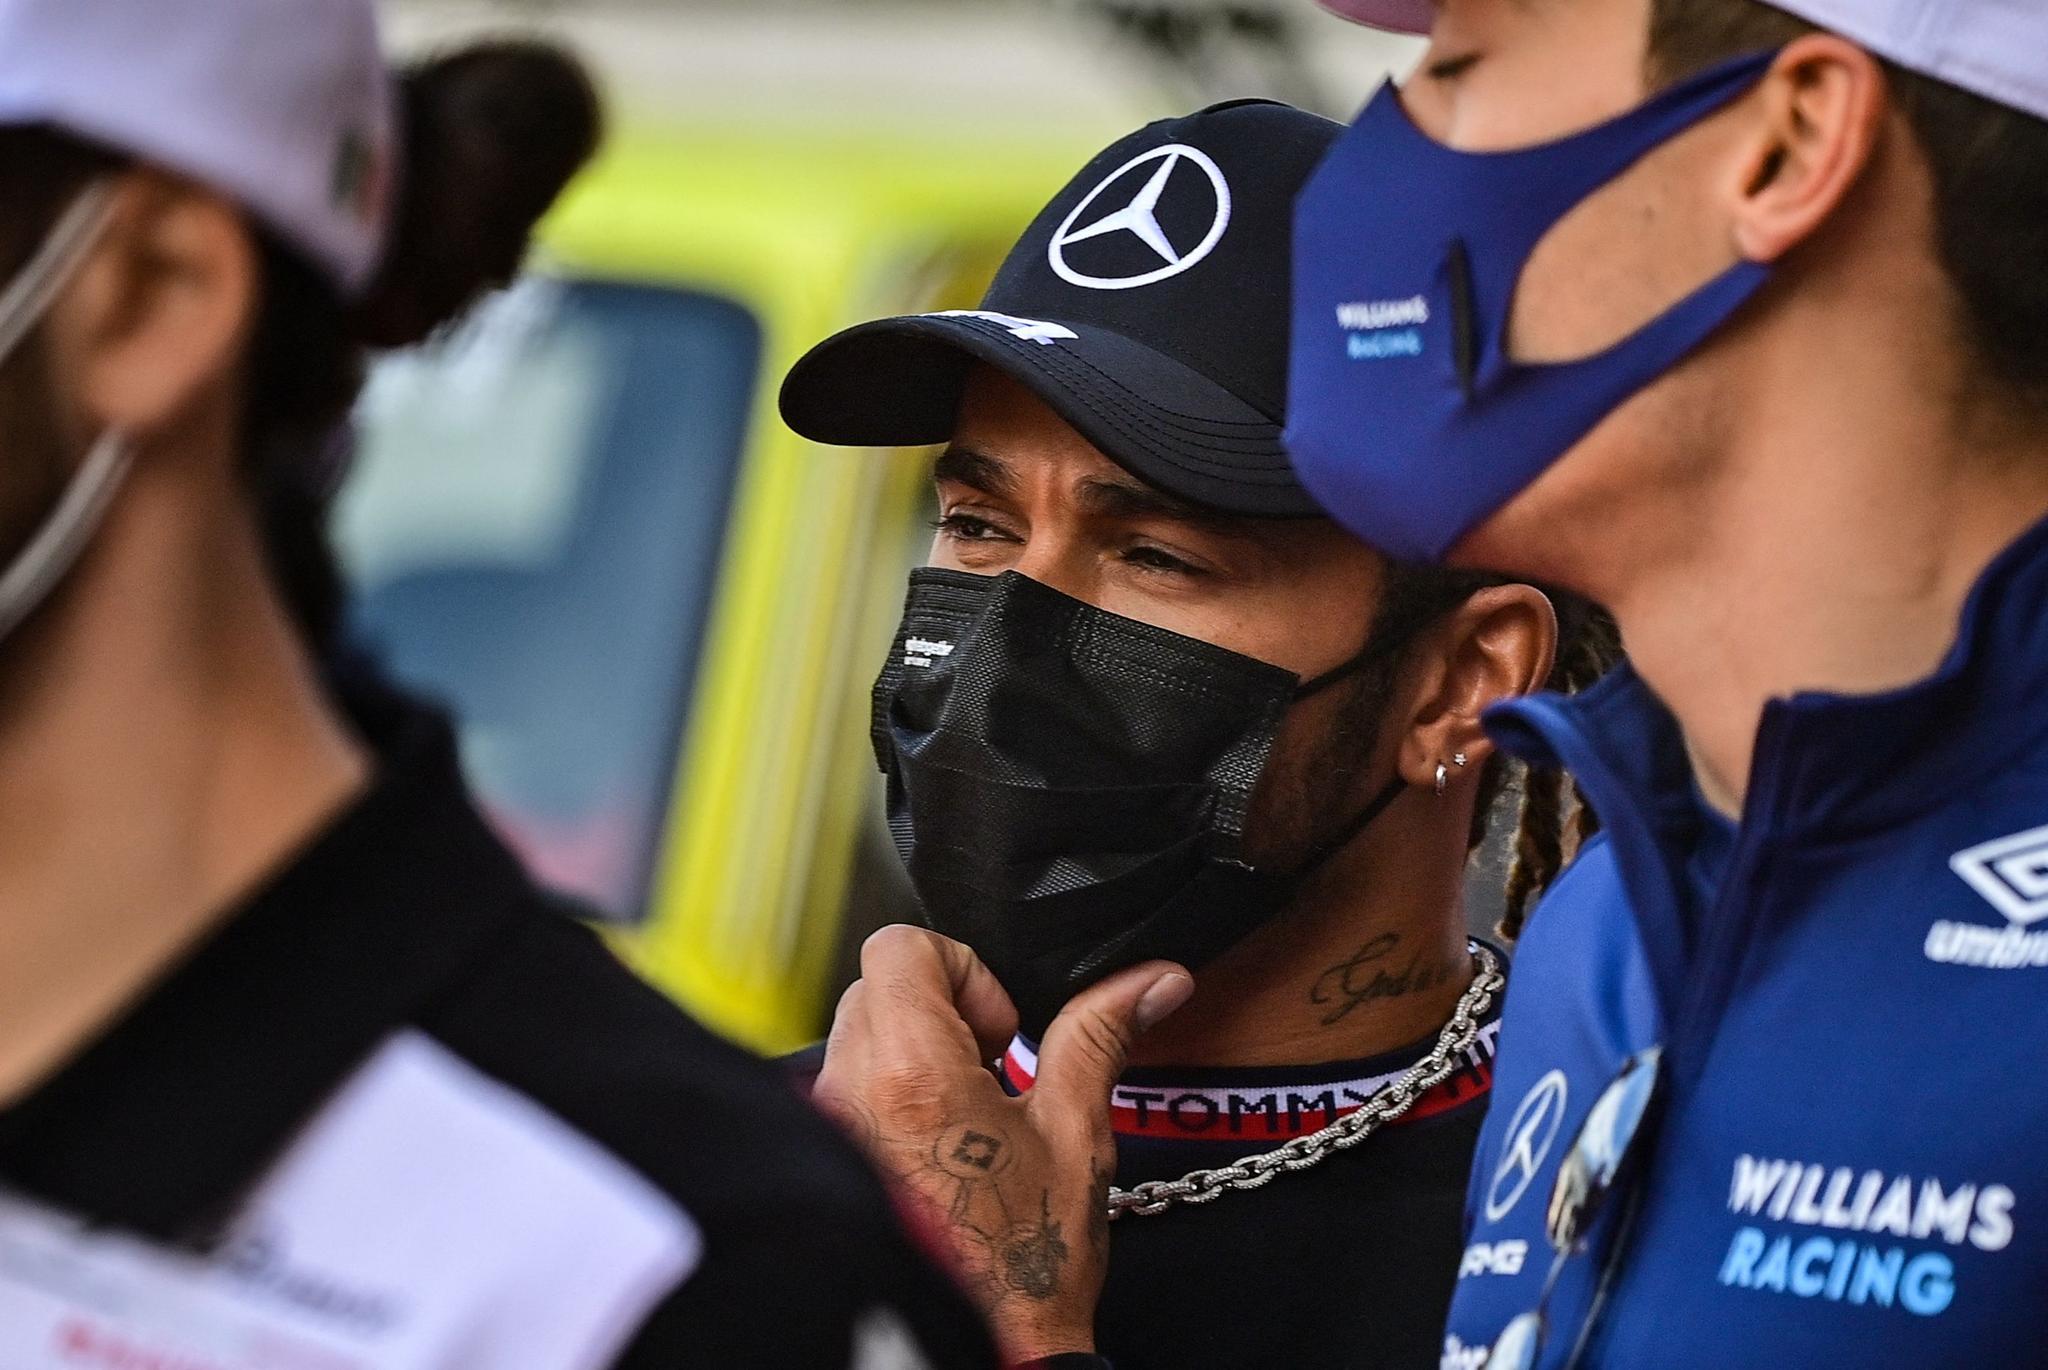 VINNER OG TAPER SOM ET LAG: Lewis Hamilton sier Mercedes ikke tar lett på fiaskoen i Monaco.